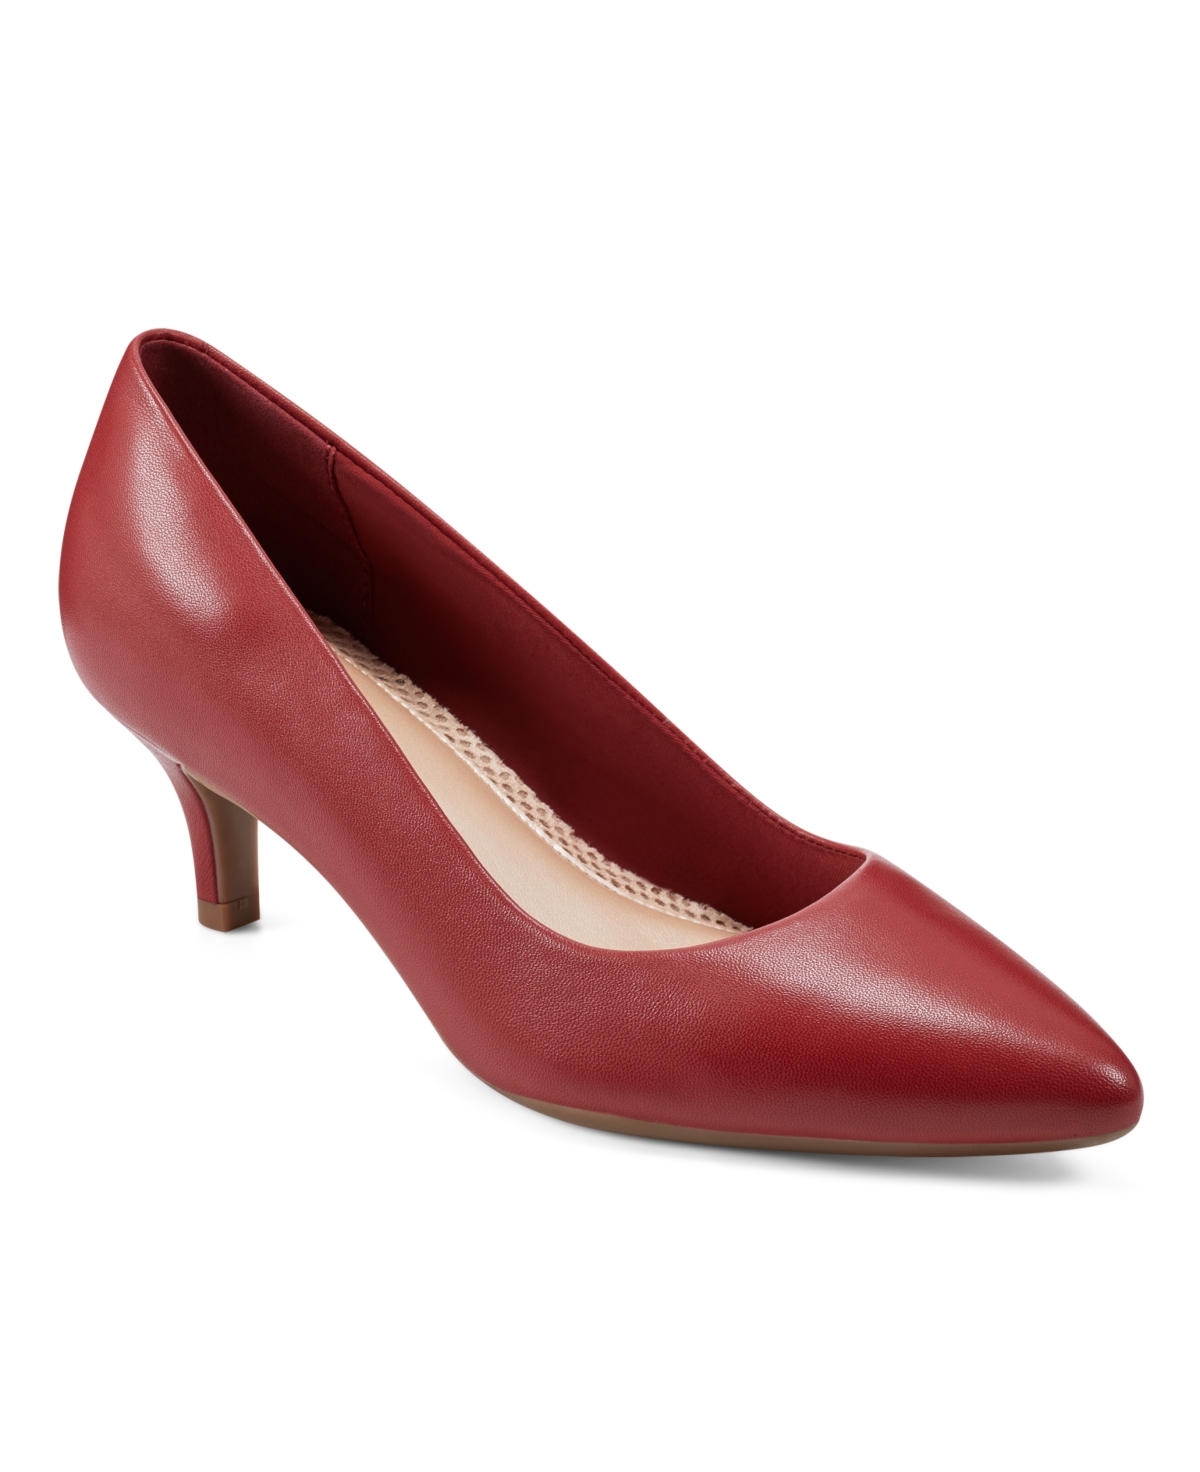 Women's Lexie Slip-On Kitten Heel Dress Pumps - Red Leather